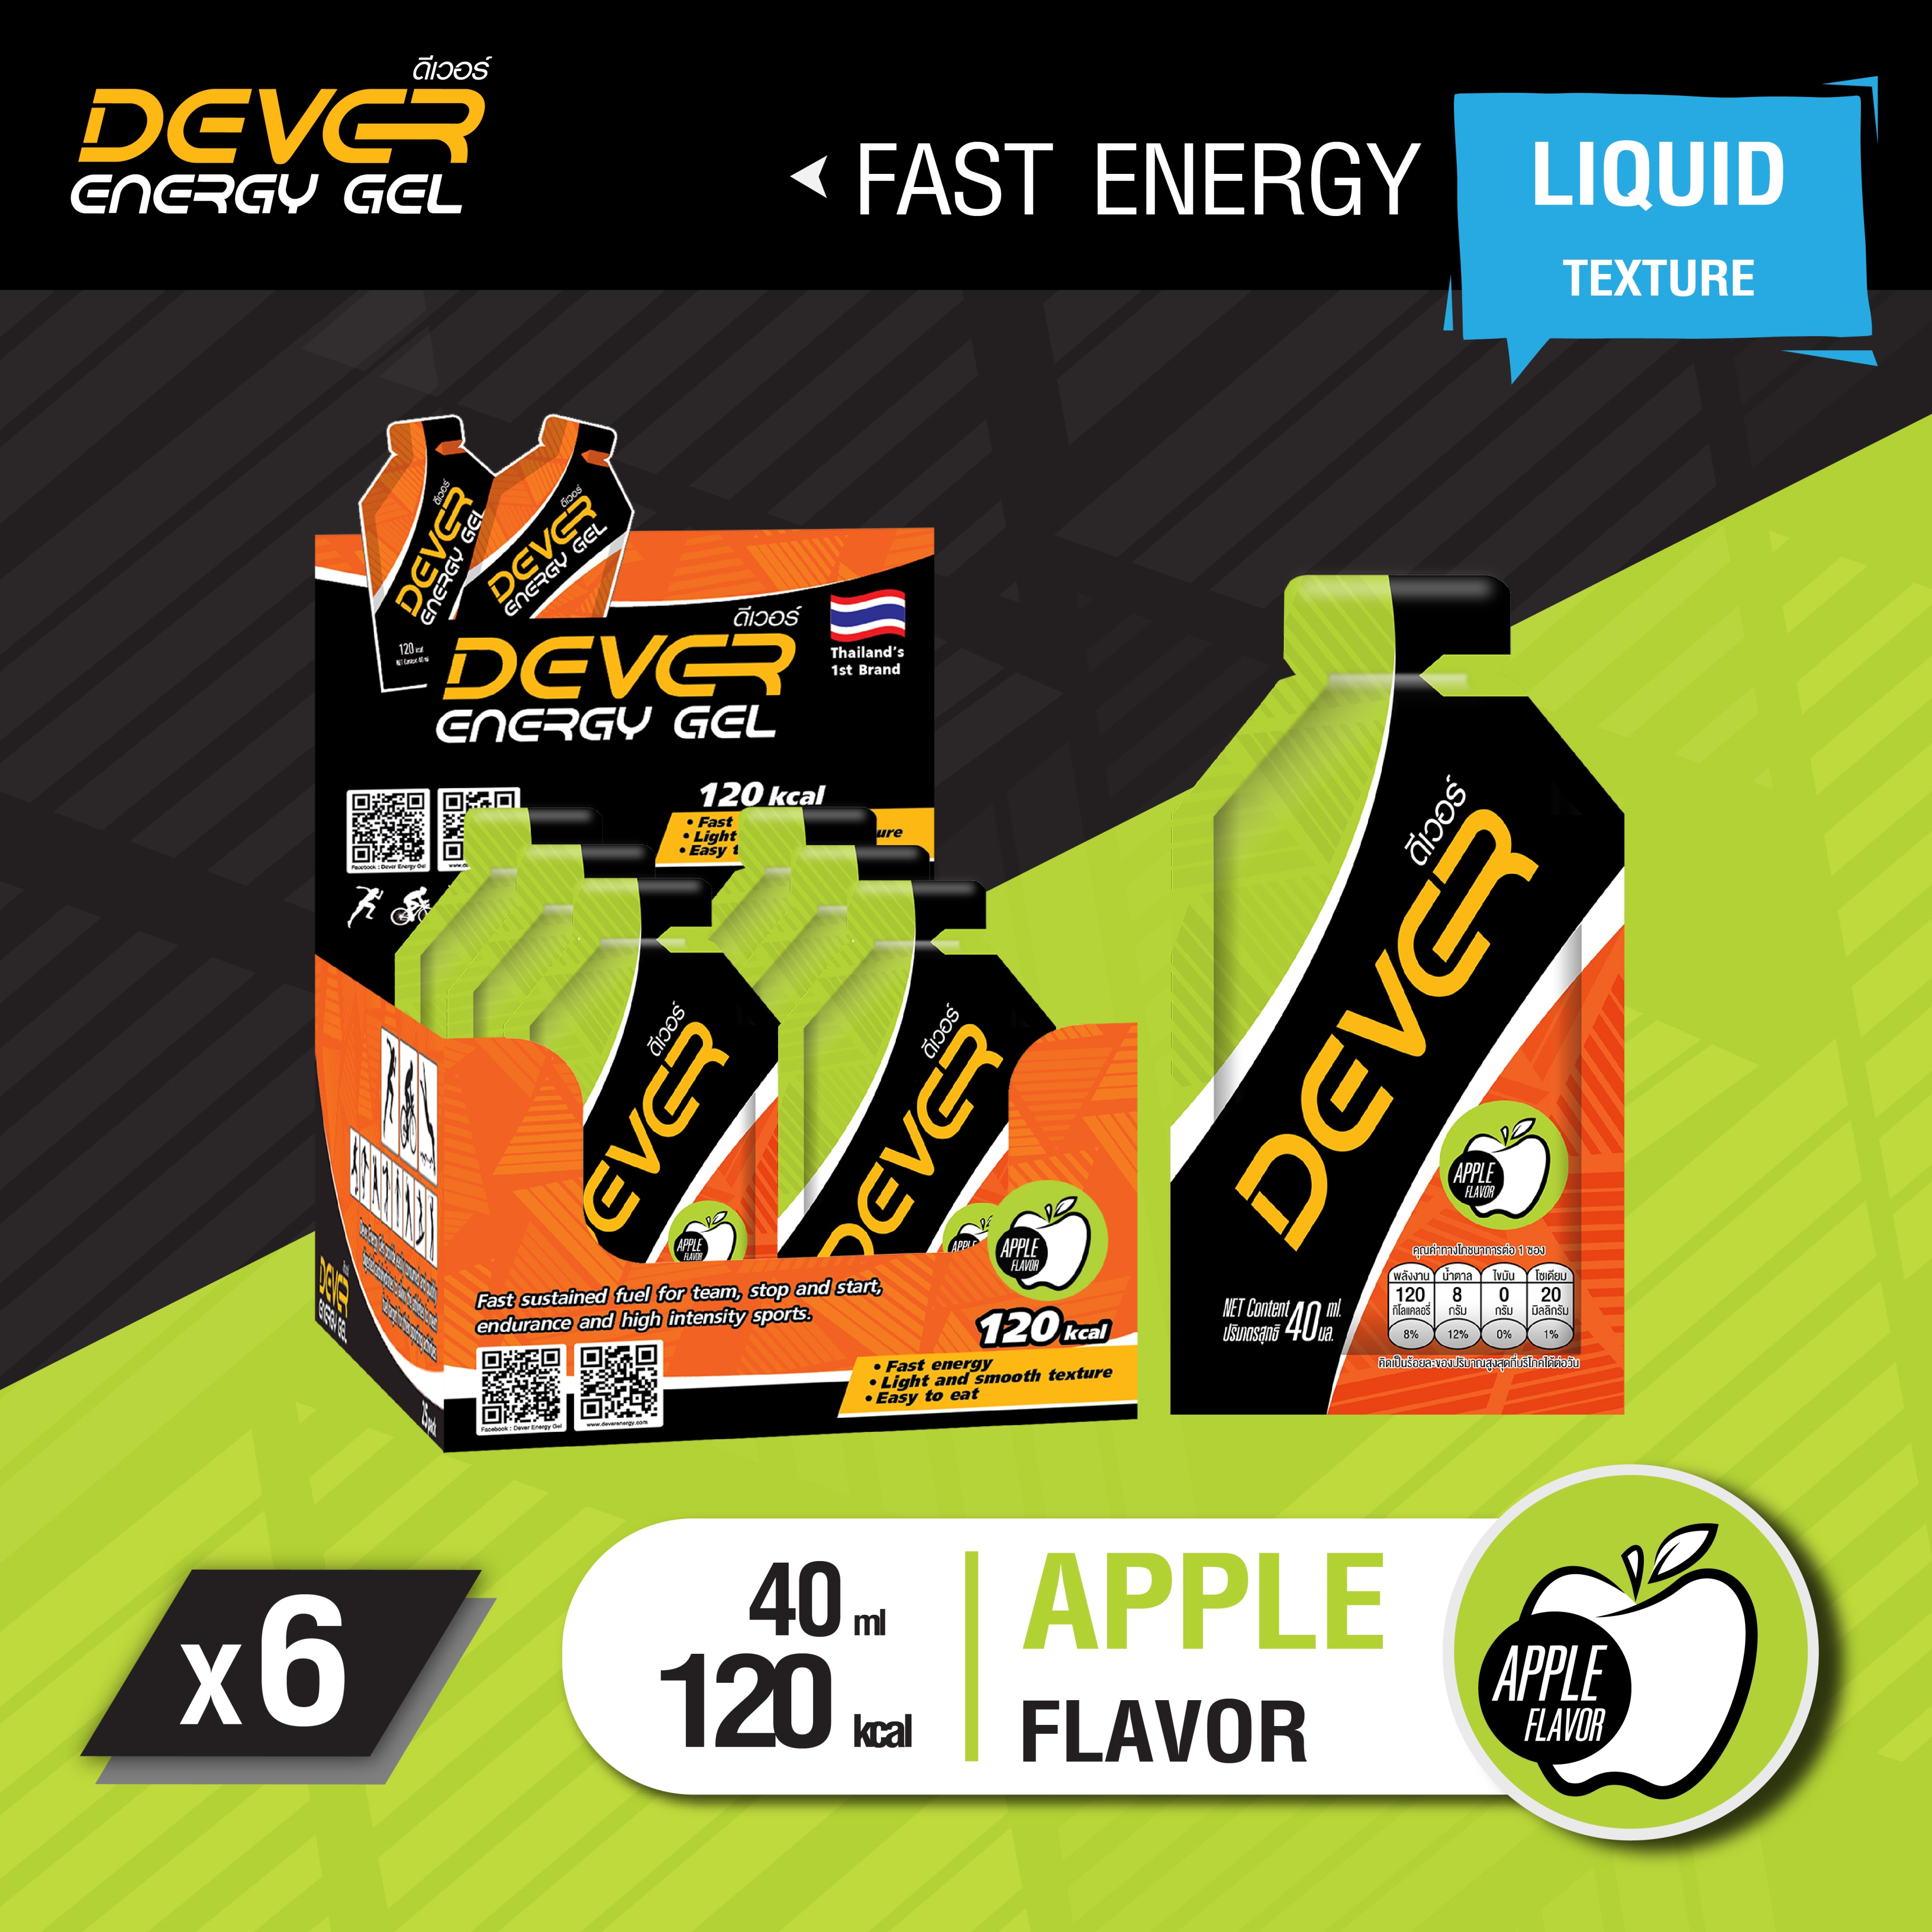 DEVER vital energy gel เจลวิ่ง เจลนักวิ่ง นักกีฬา นักวิ่ง เจลให้พลังงานพร้อมทาน สารอาหารสำหรับนักกีฬา เจลพลังงาน เกลือแร่ > 40 ML แอปเปิ้ล 6 ซอง